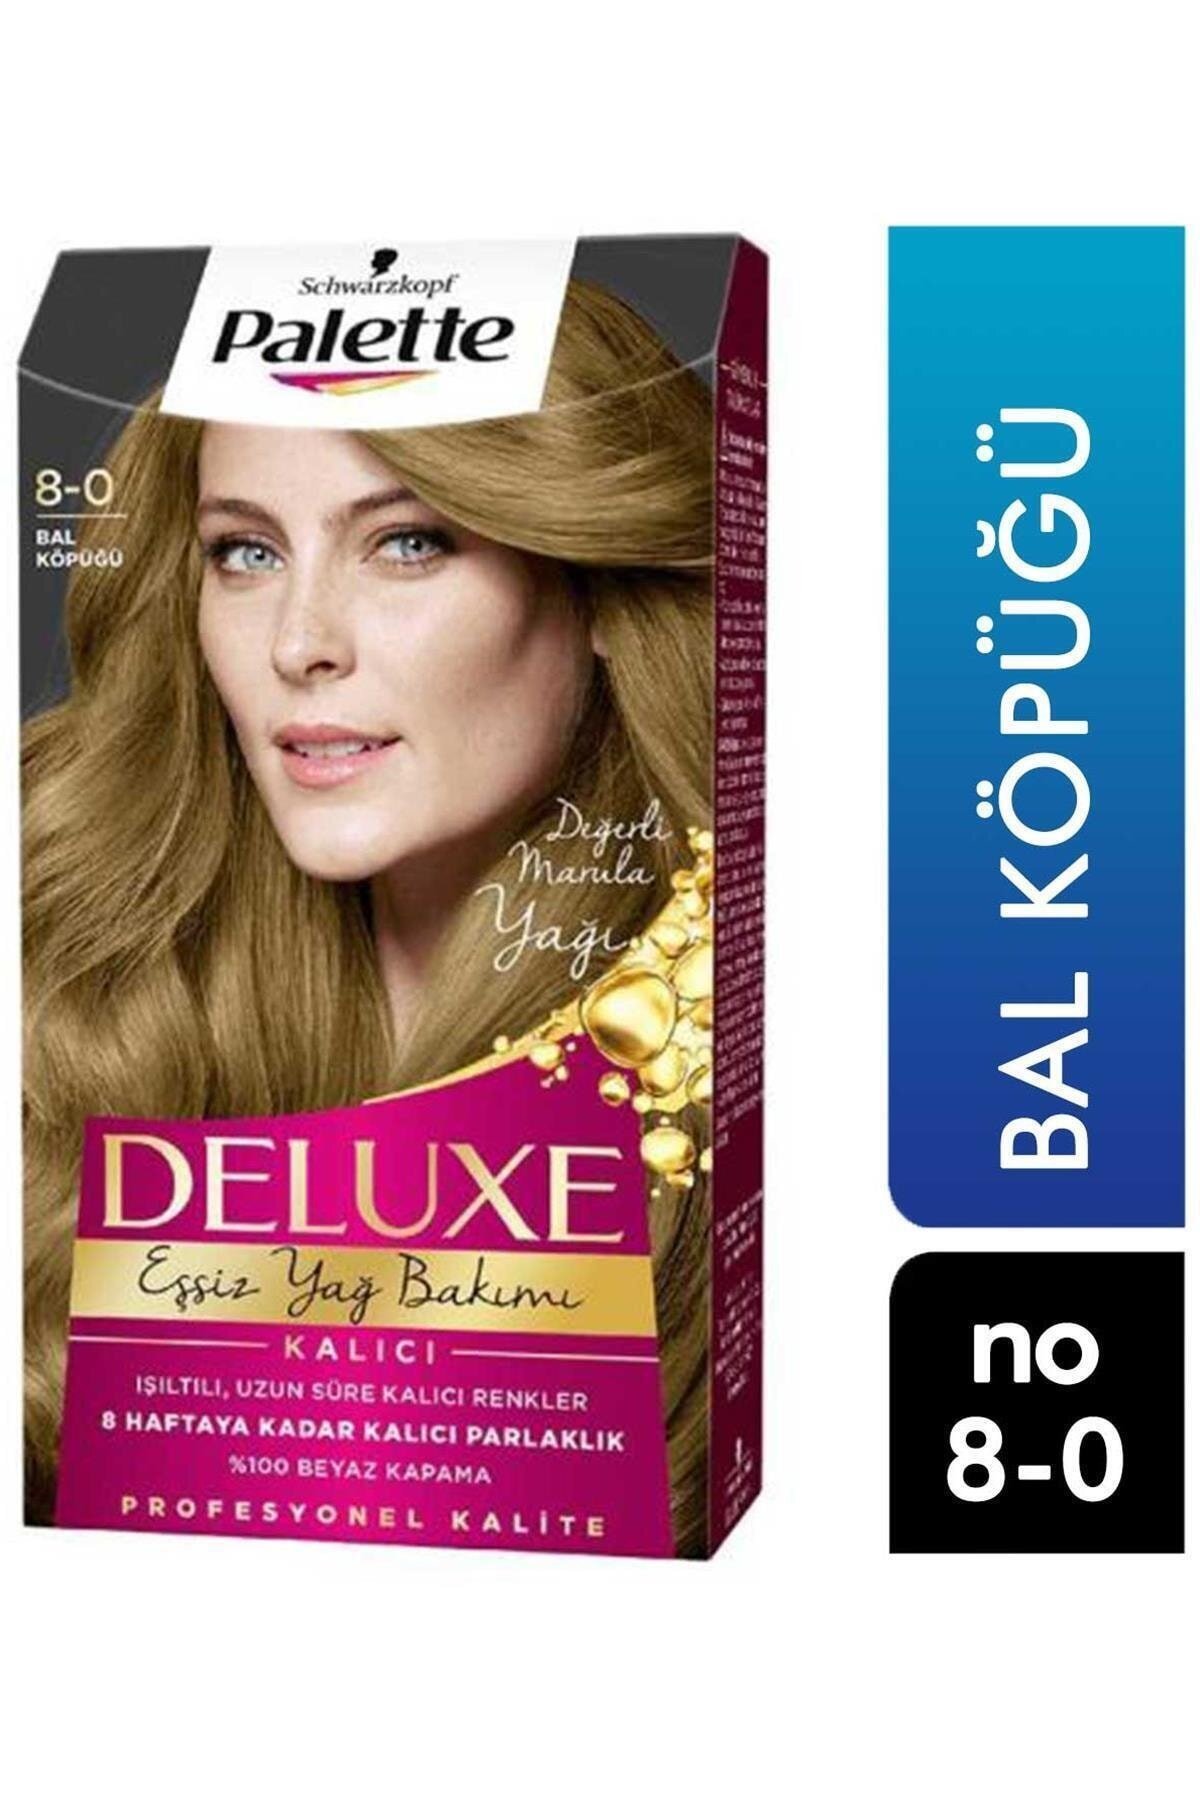 Palette Deluxe Eşsiz Yağ Bakımı Saç Boyası Bal Köpüğü 8 0 | Farma Ucuz